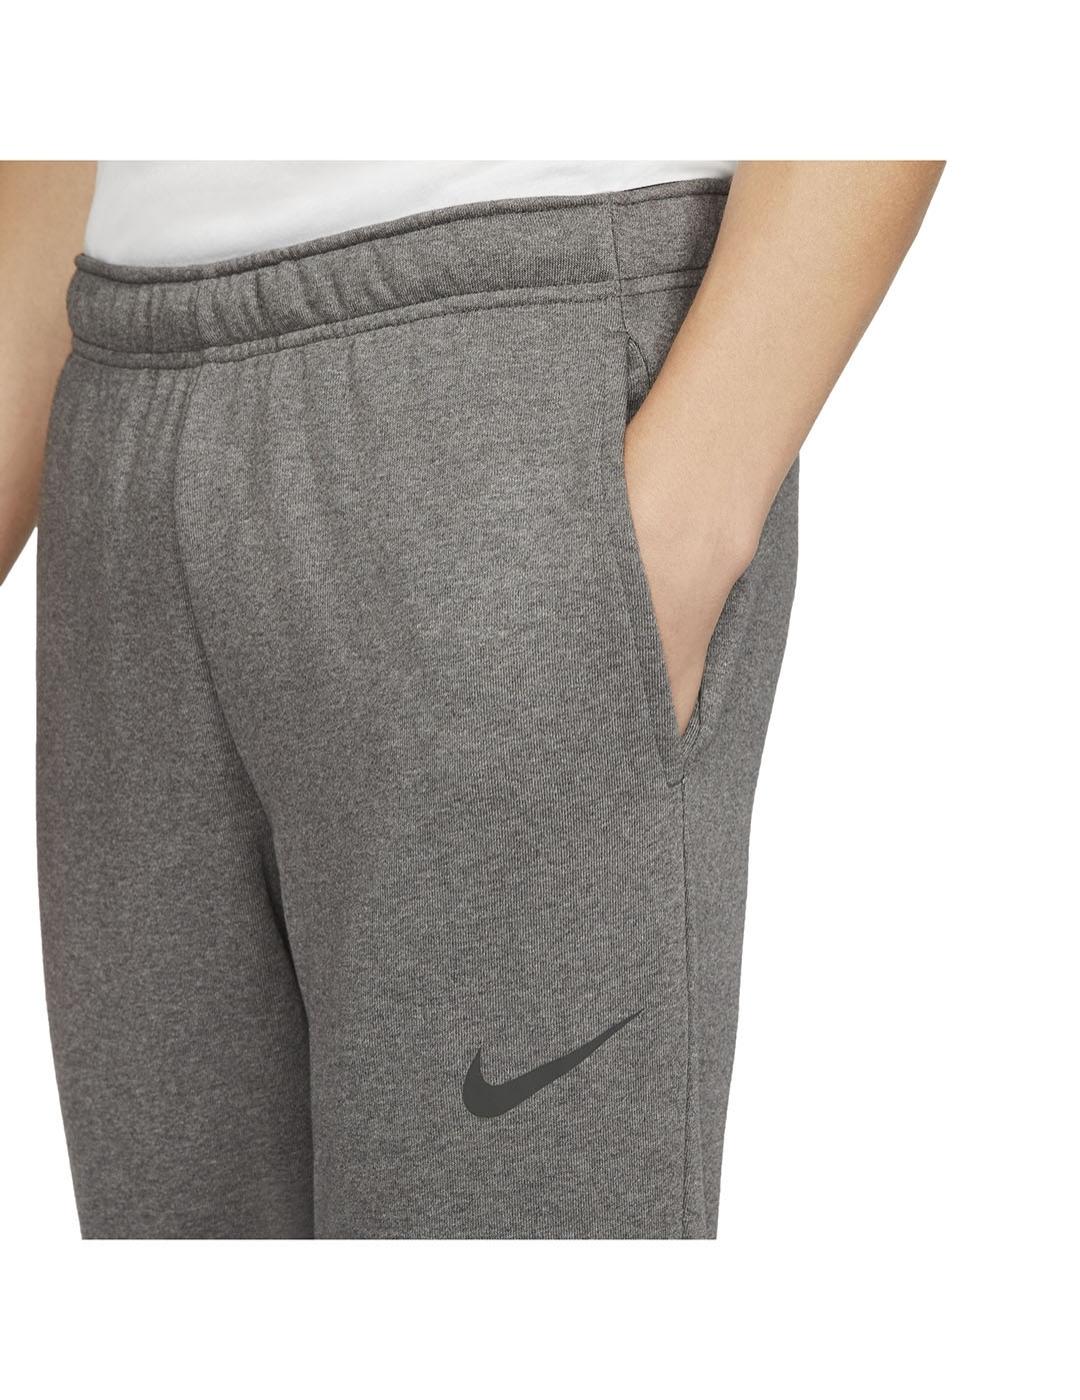 Pantalon Hombre Nike Taper Gris